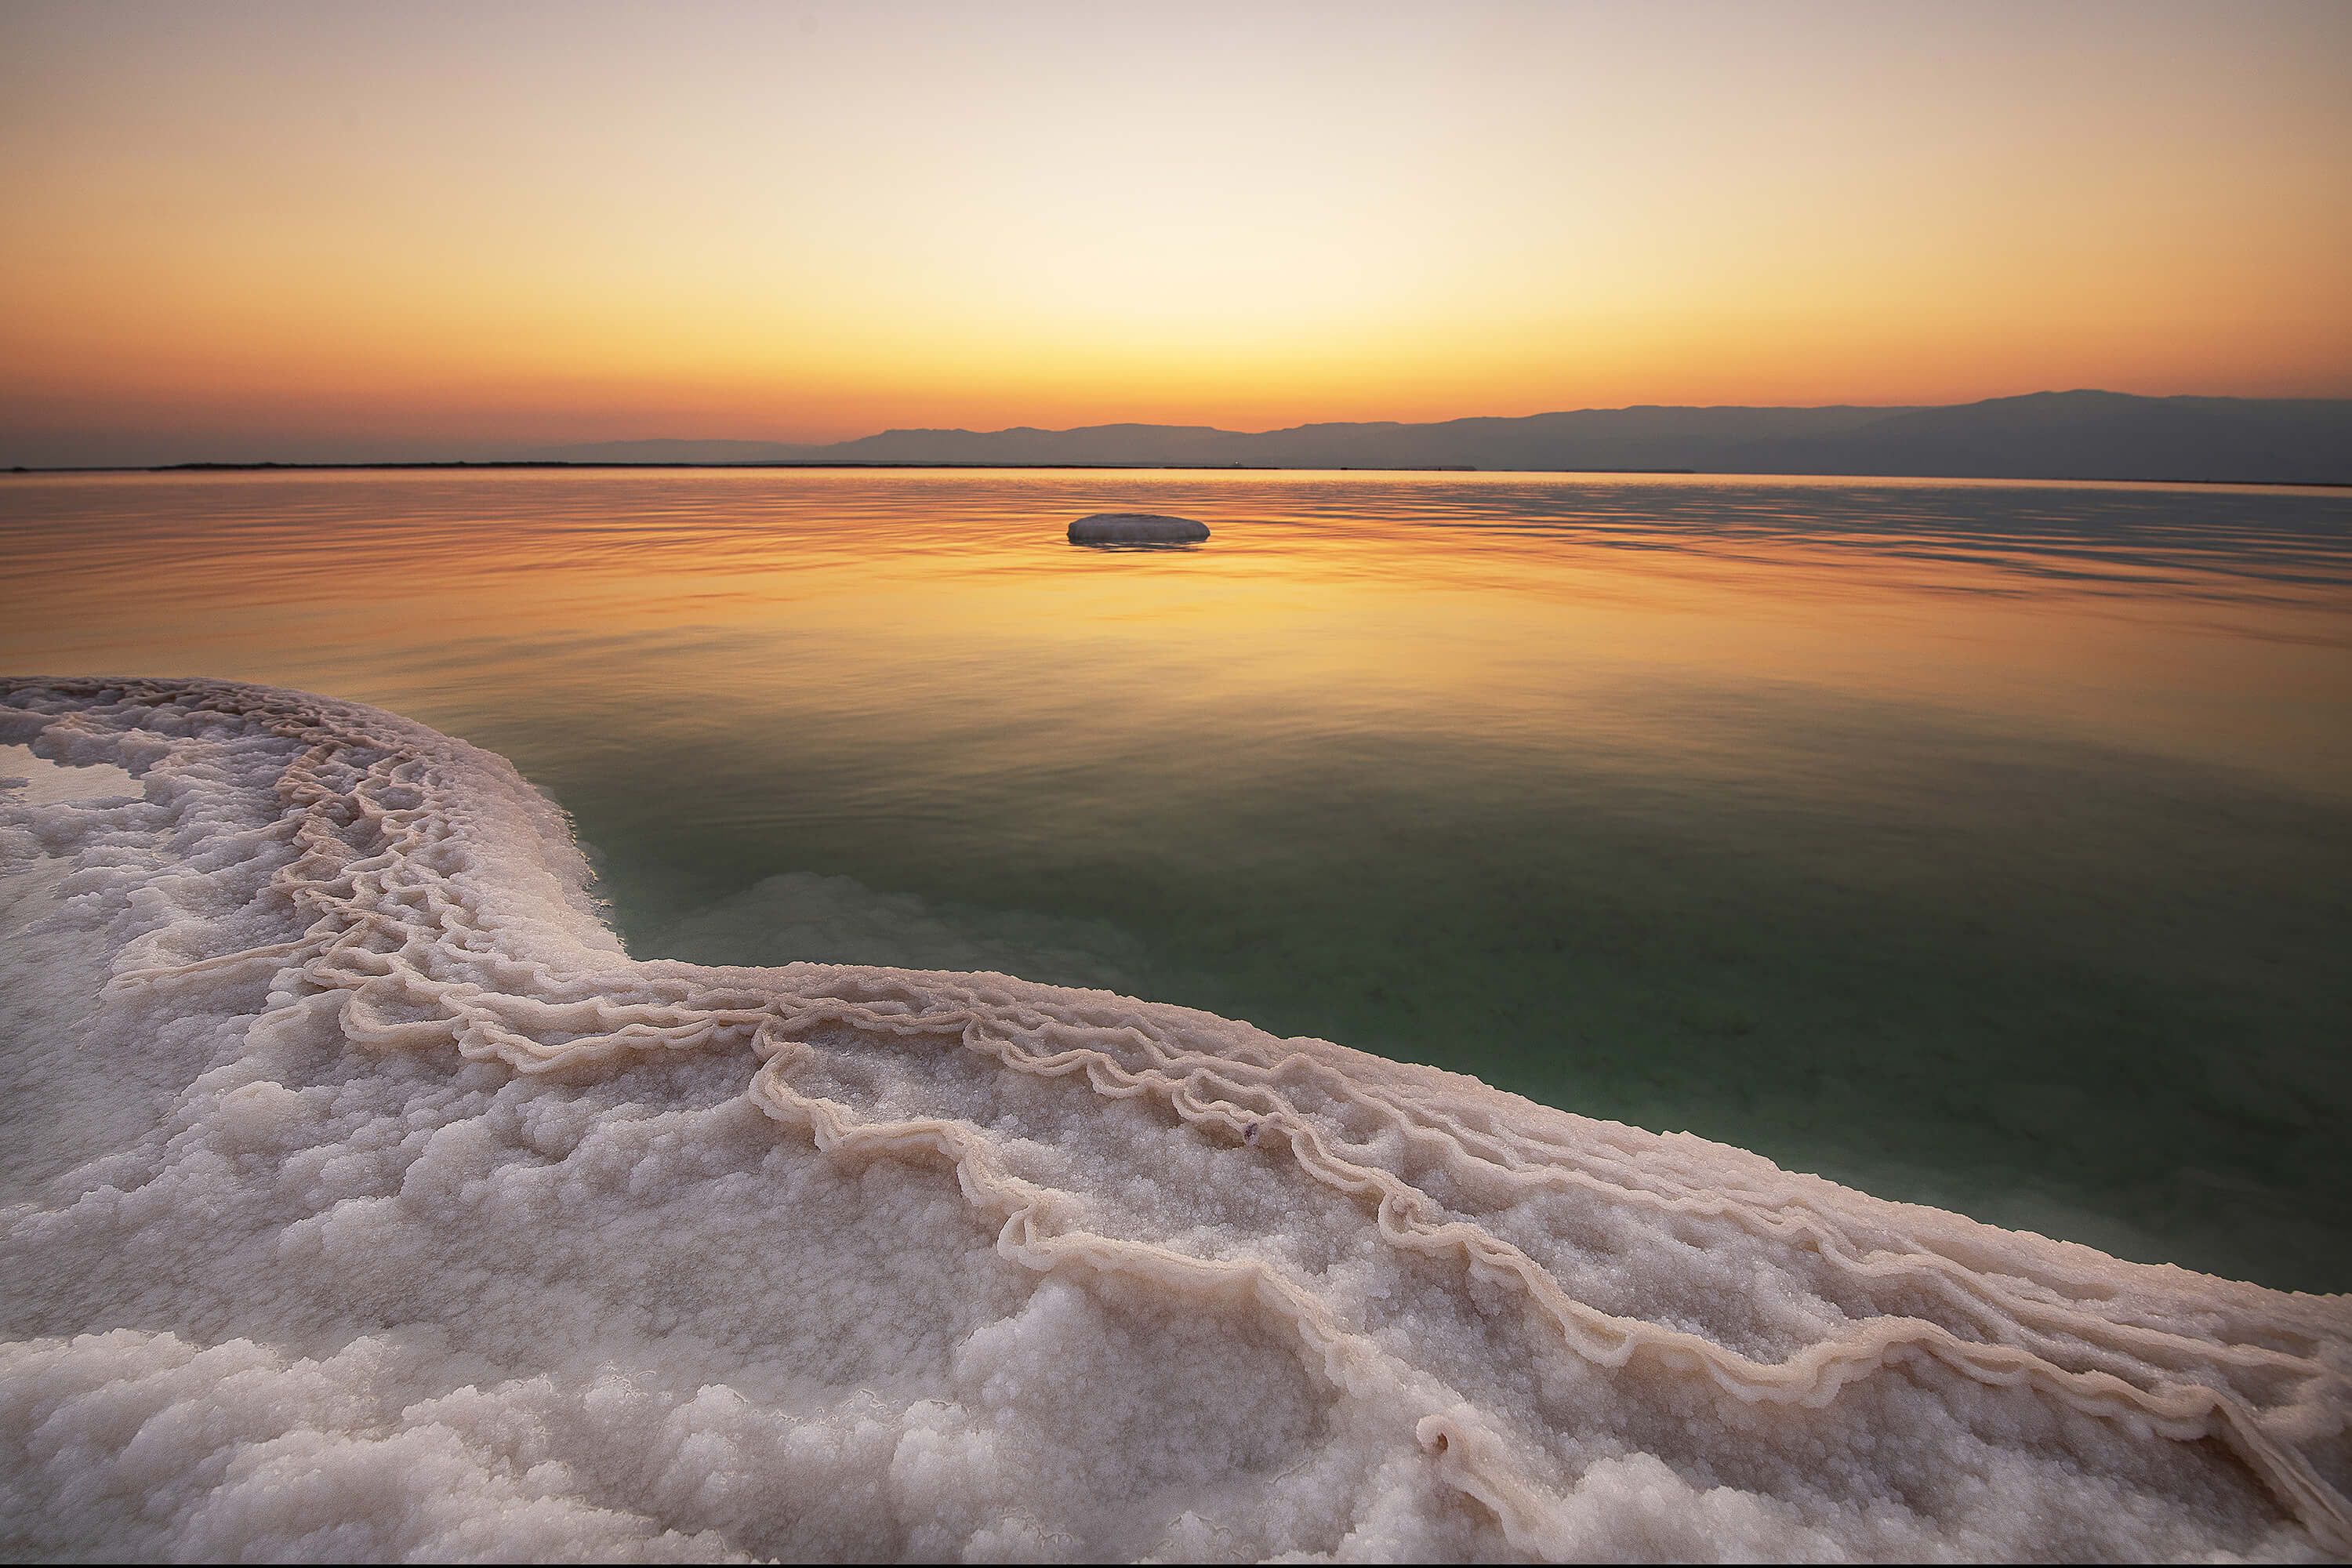  Dead Sea